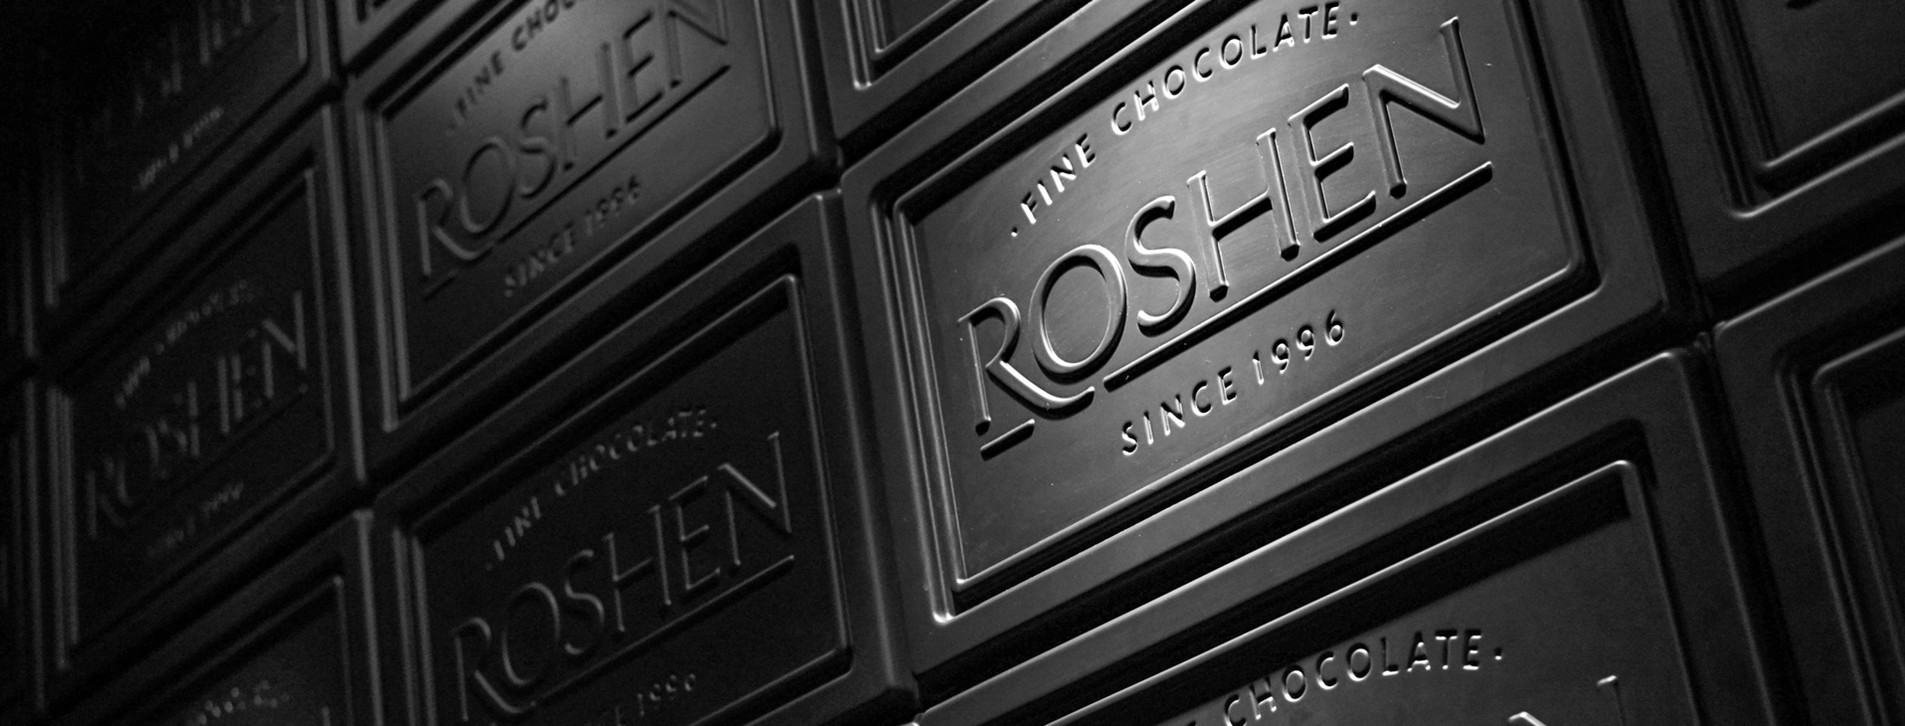 Фото 1 - Екскурсія до шоколадної фабрики Roshen для двох